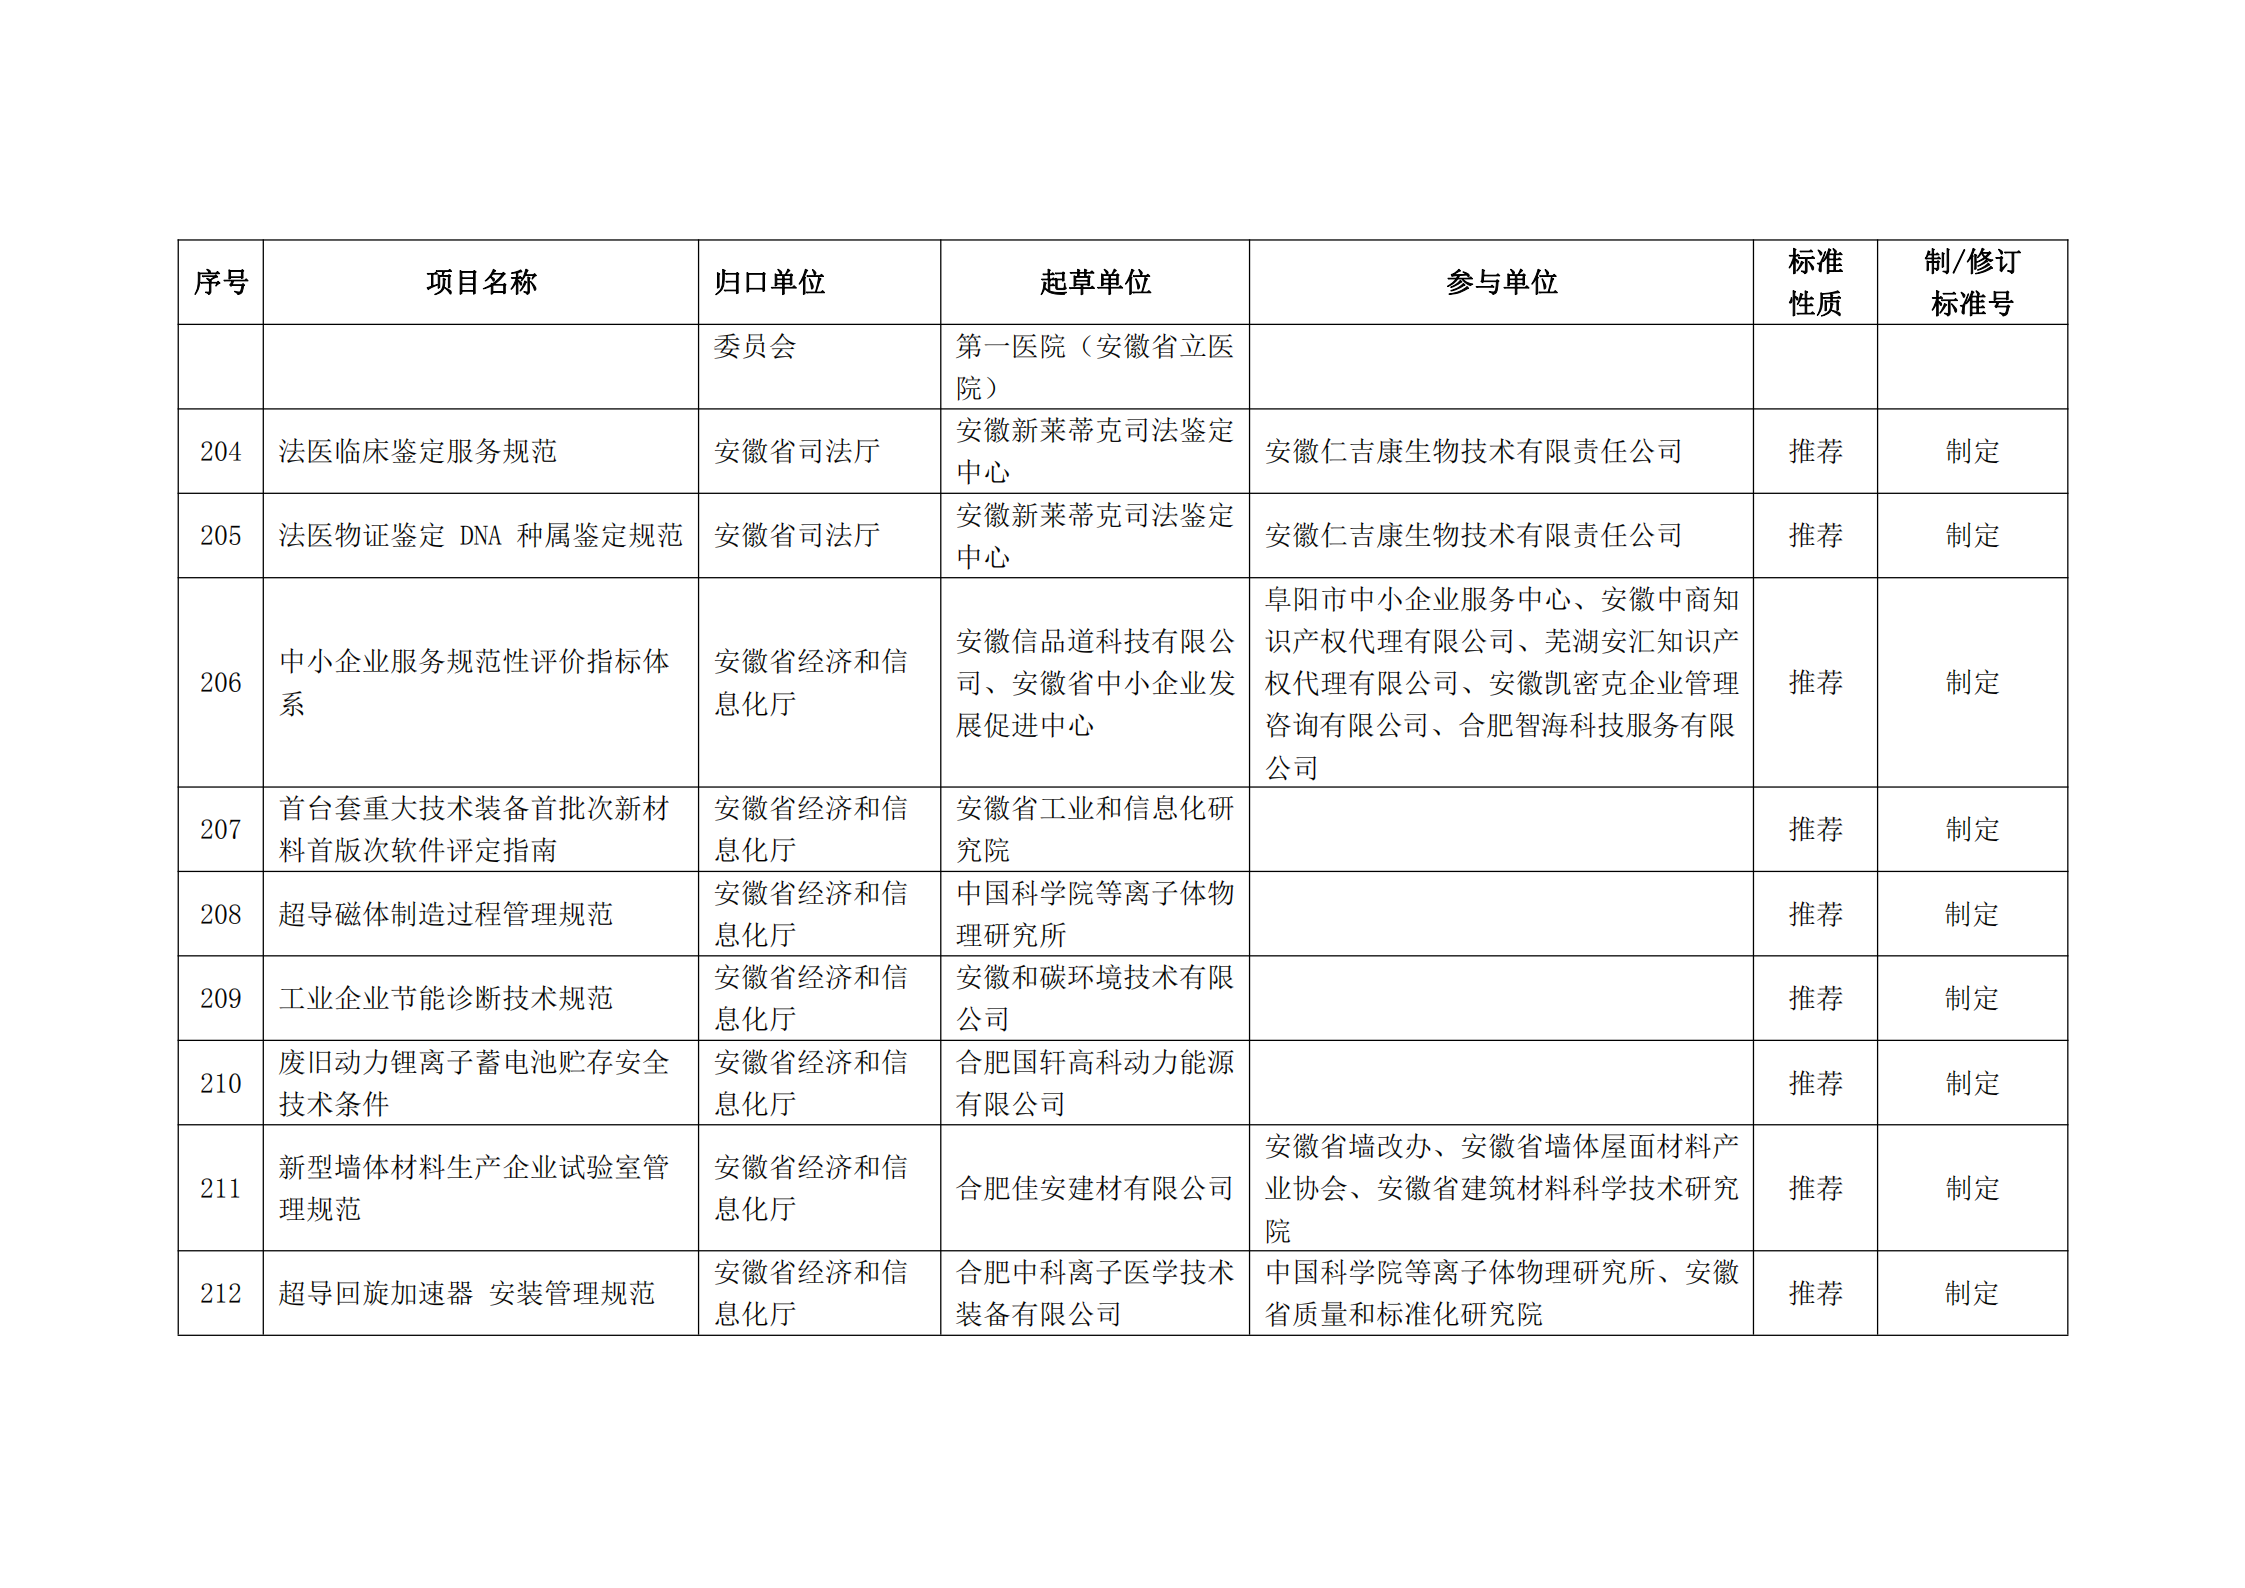 2020 年第二批安徽省地方标准制、修订计划项目汇总表(图23)